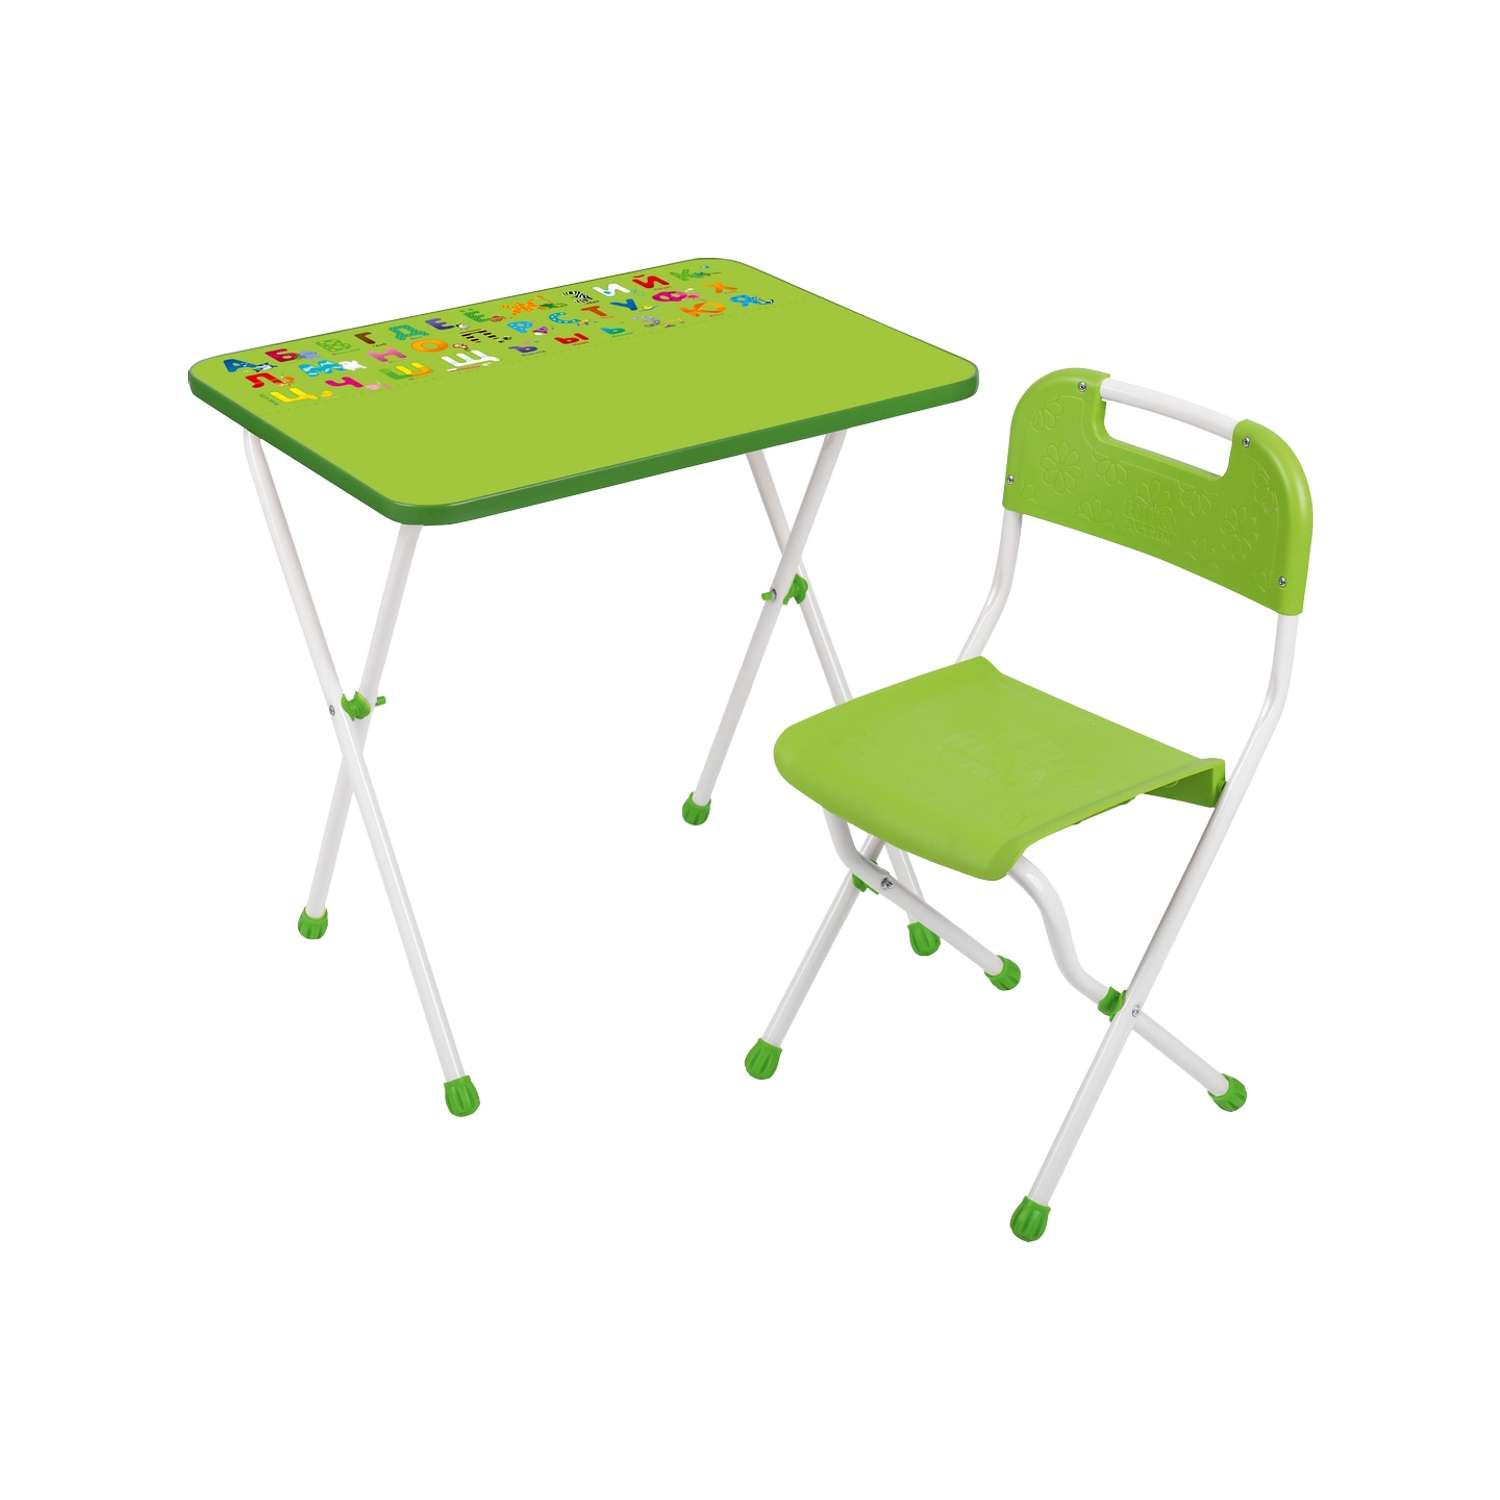 Комплект детской мебели InHome игровой стол и стул - фото 2